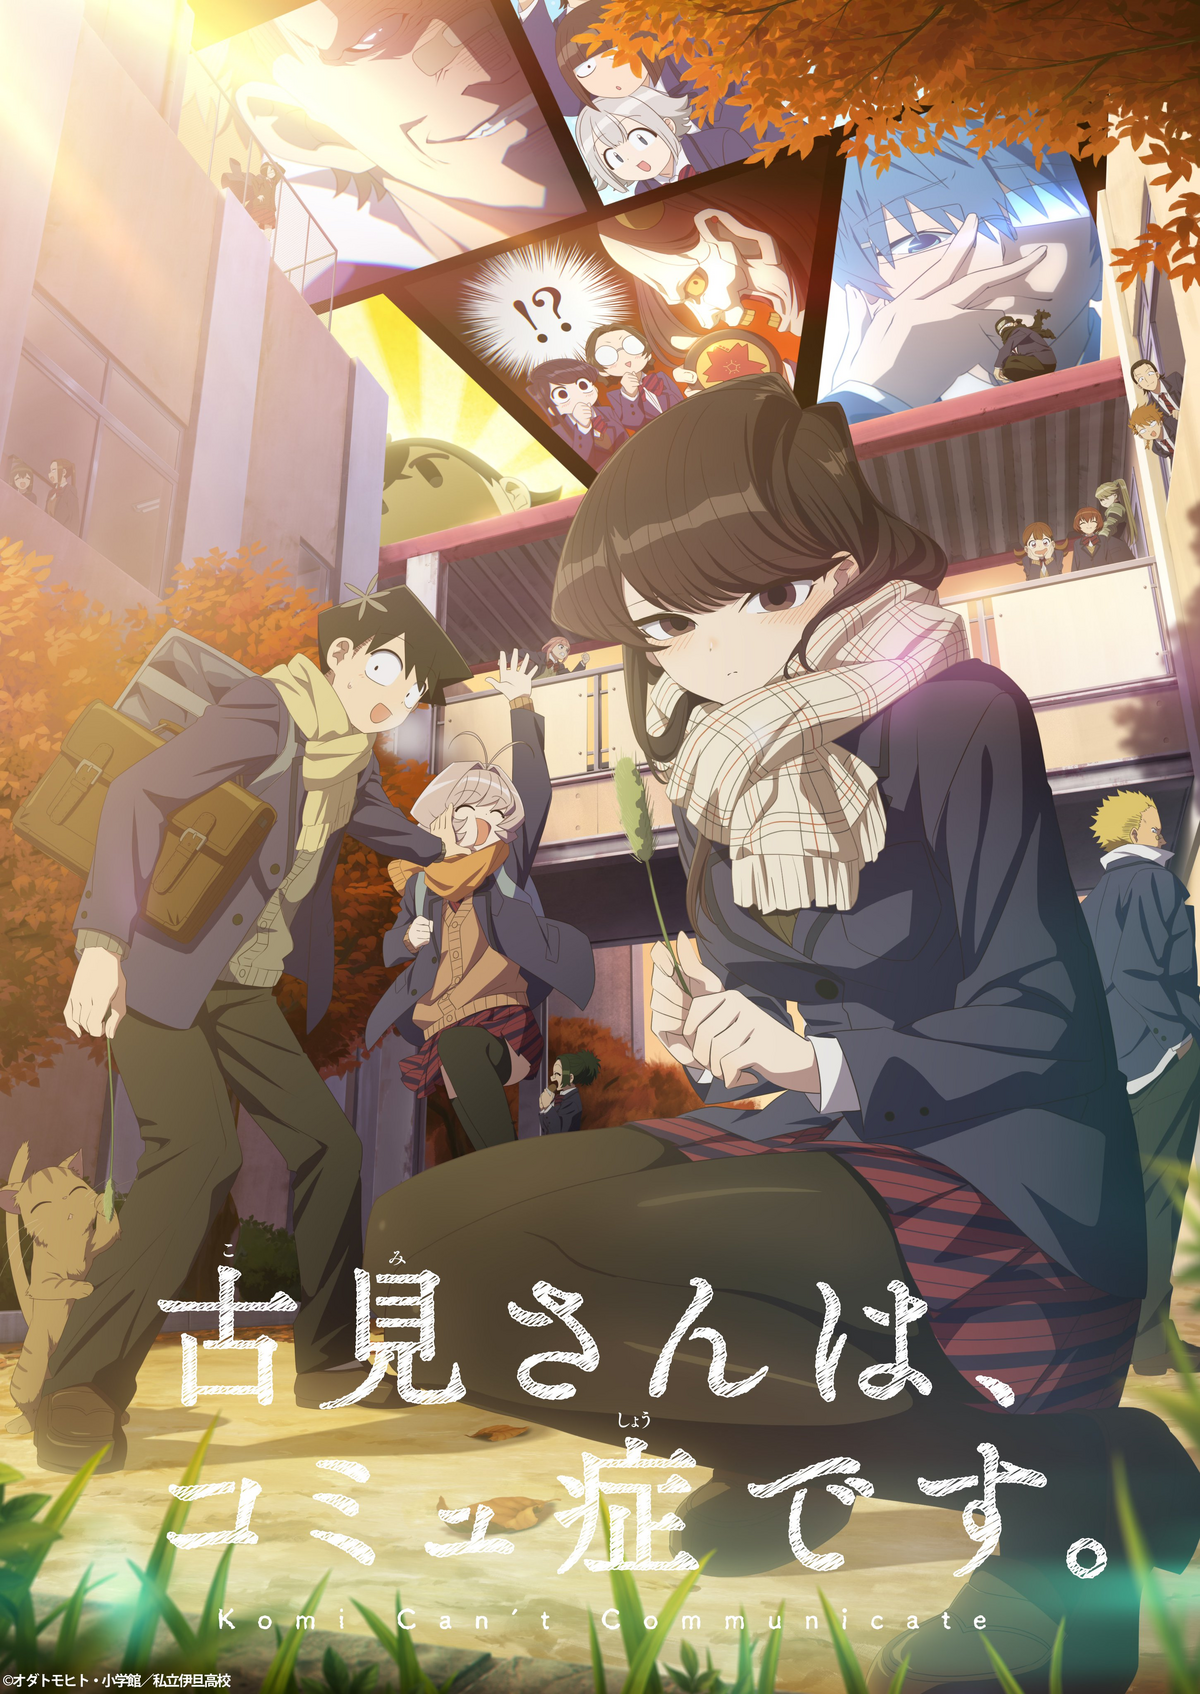 Komi-san wa Comyushou desu 2nd Season – RABUJOI – An Anime Blog